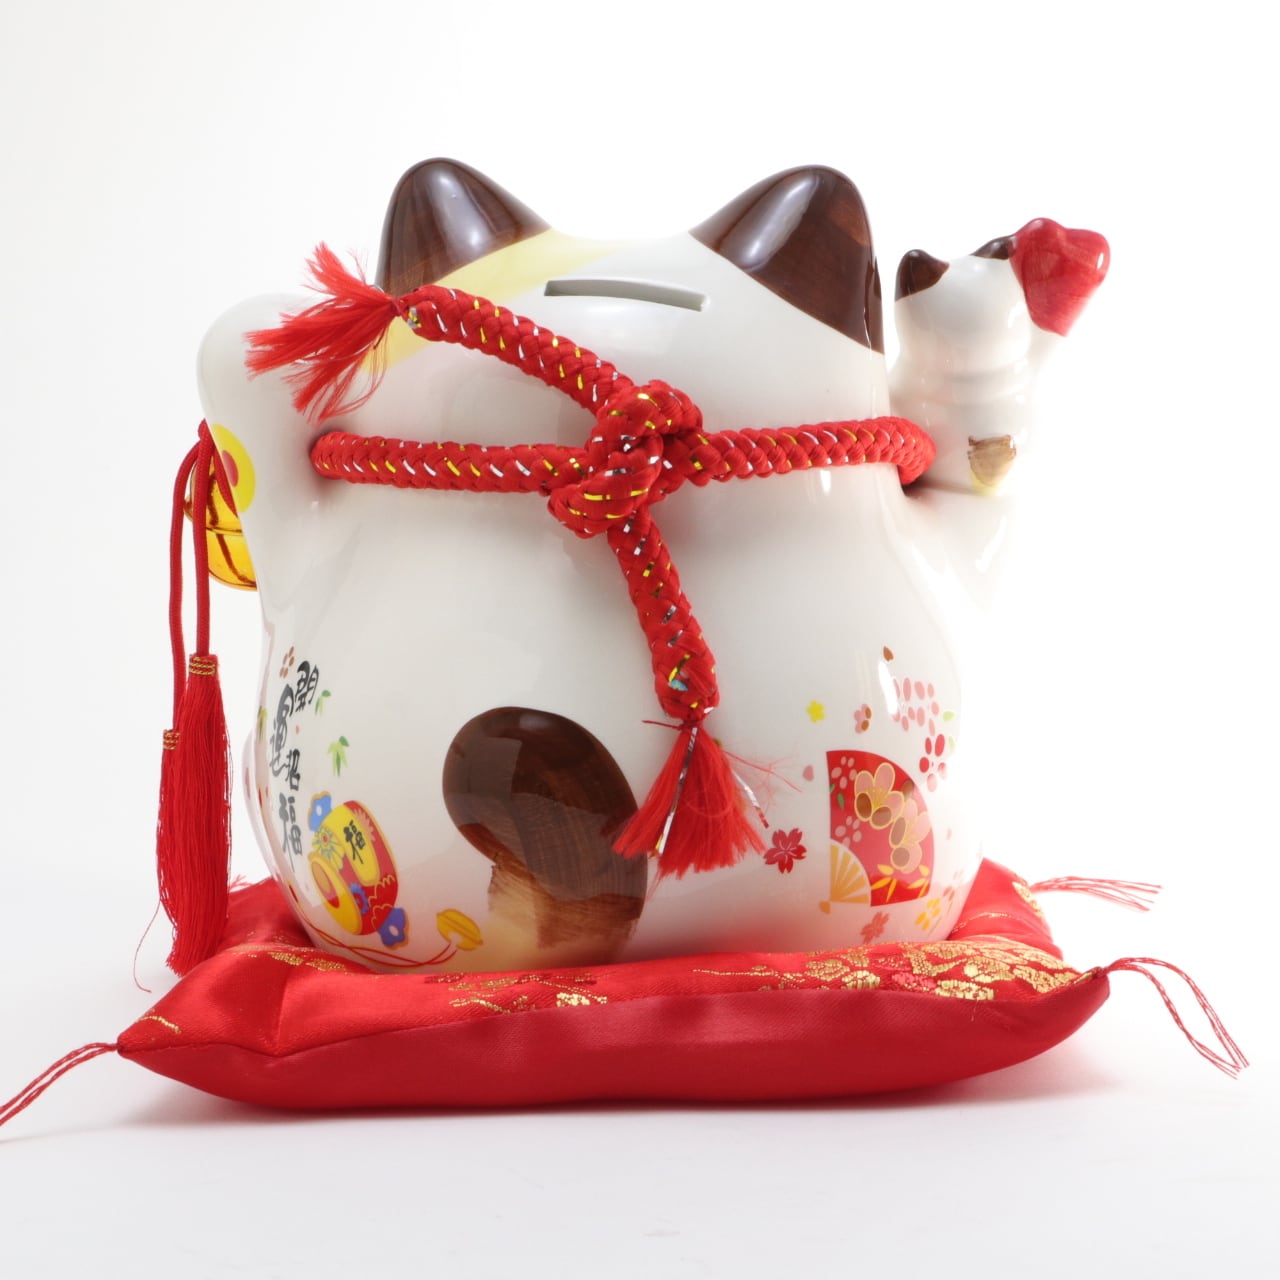 招き猫 貯金箱 置物 オブジェ ネコ 陶器 かわいい 大きい コインバンク 開運招福 縁起物 陶器製